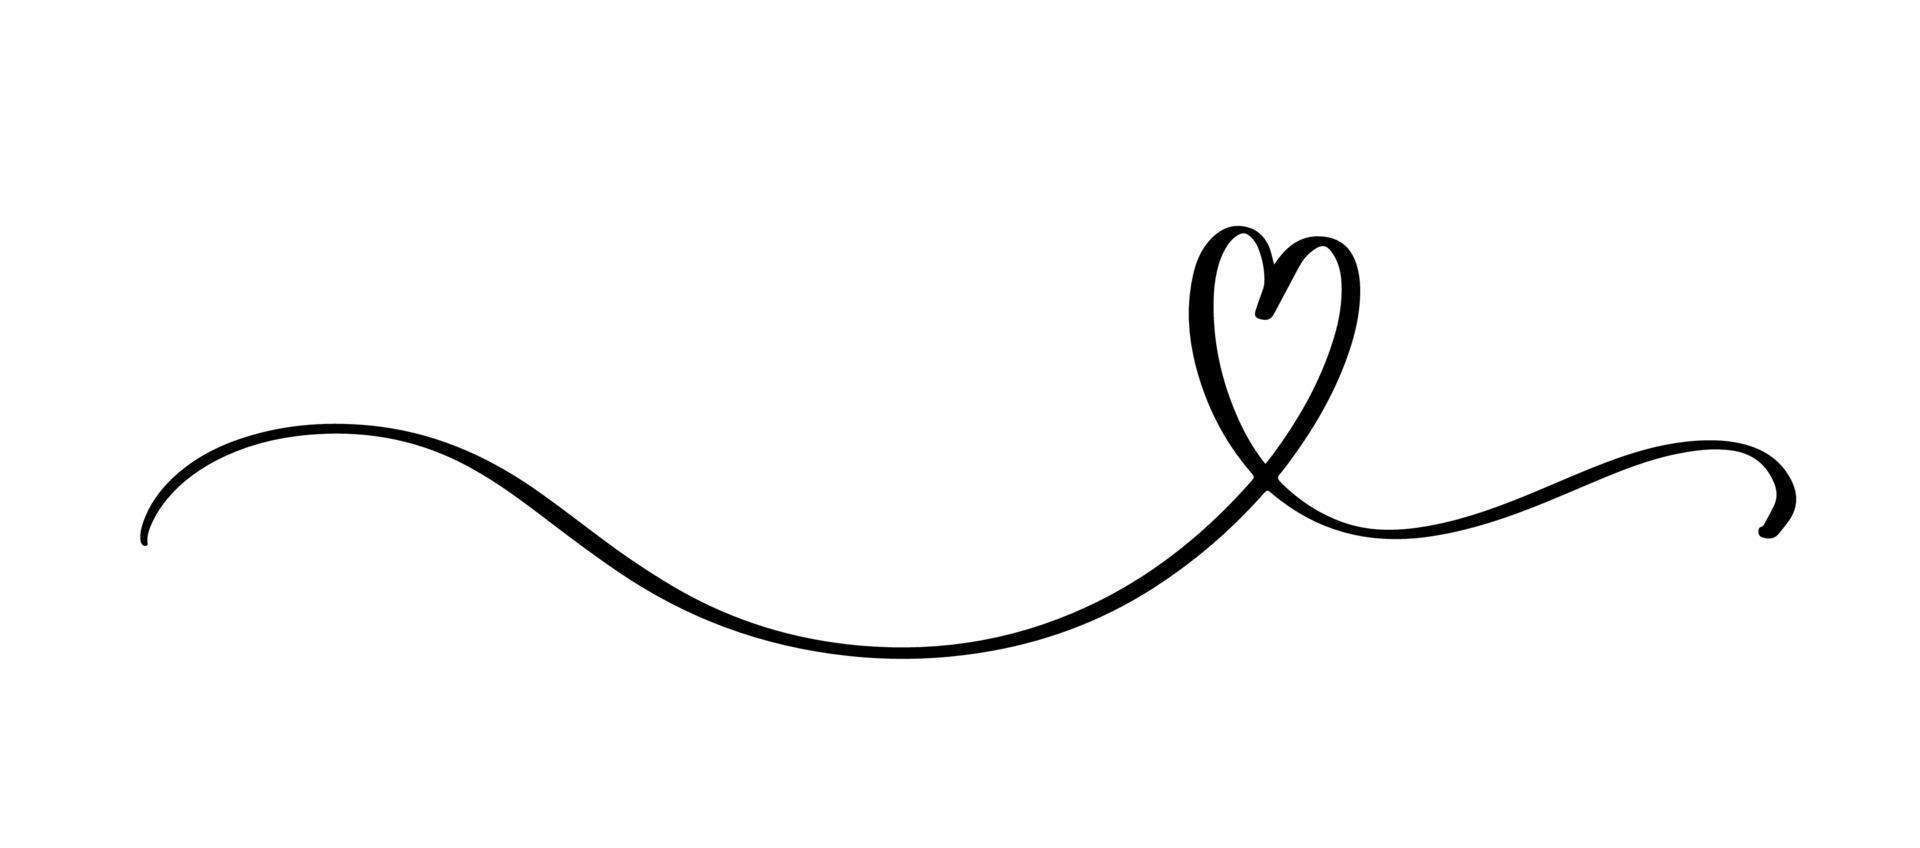 cuore e amore swirl divisore. stile doodle schizzo disegnato a mano. illustrazione vettoriale del filo del cuore dello scarabocchio della linea continua. concetto di amore e matrimonio.